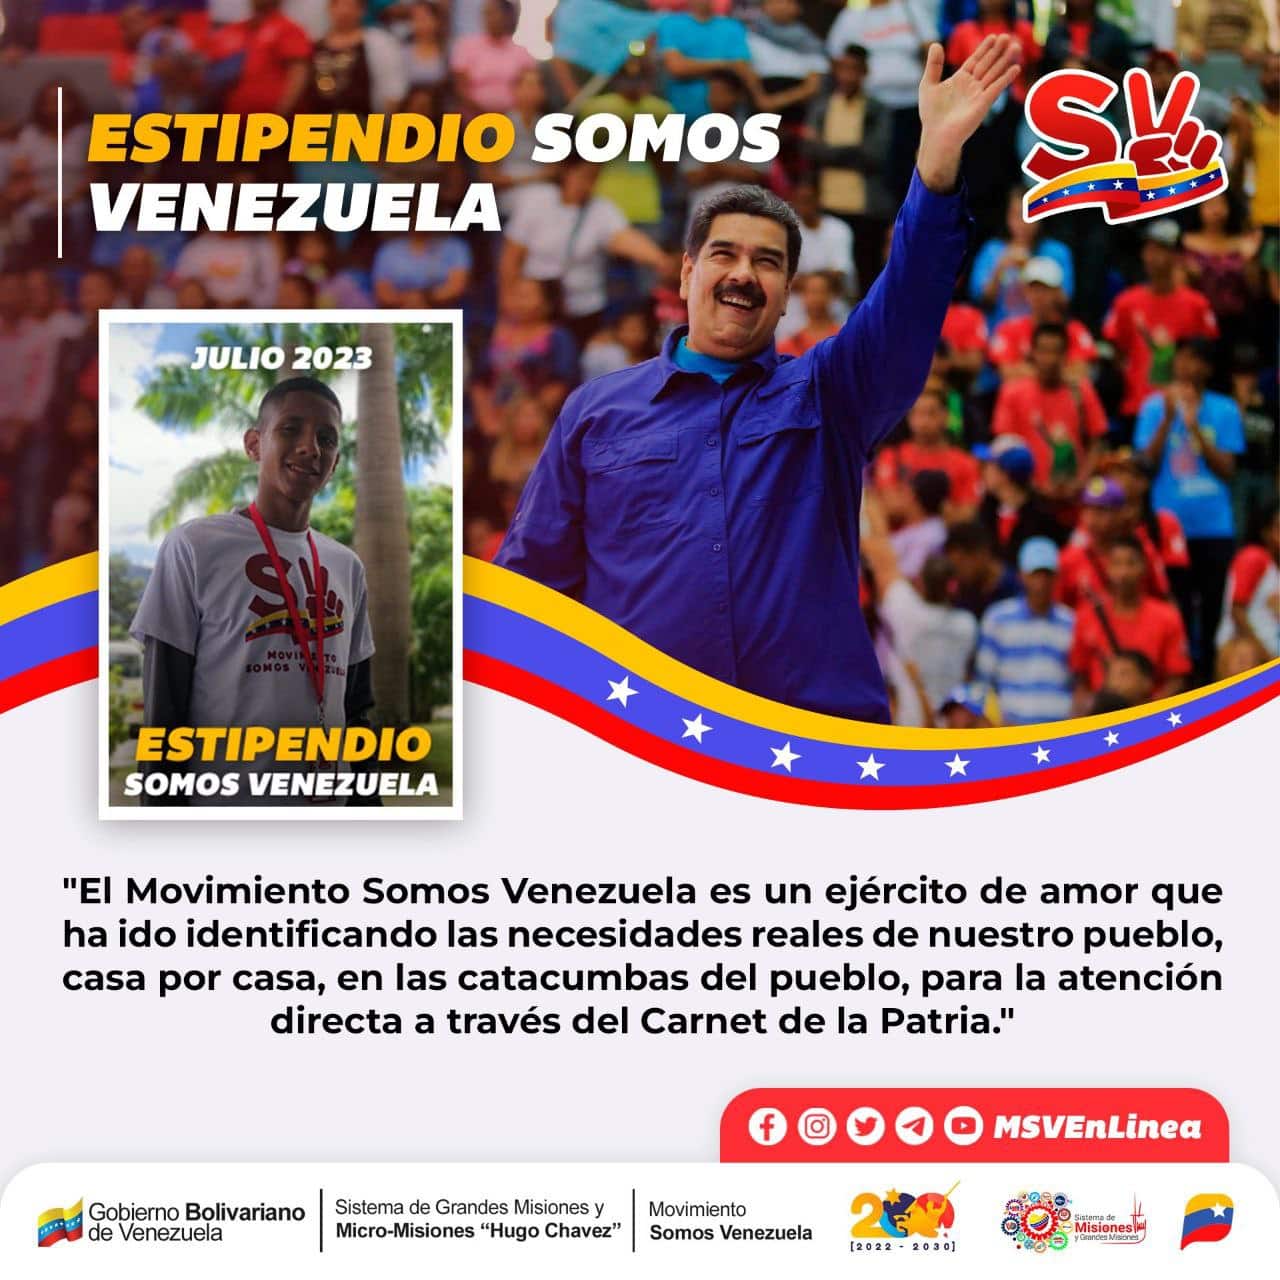 Chamba Juvenil y Somos Venezuela en julio - Chamba Juvenil y Somos Venezuela en julio